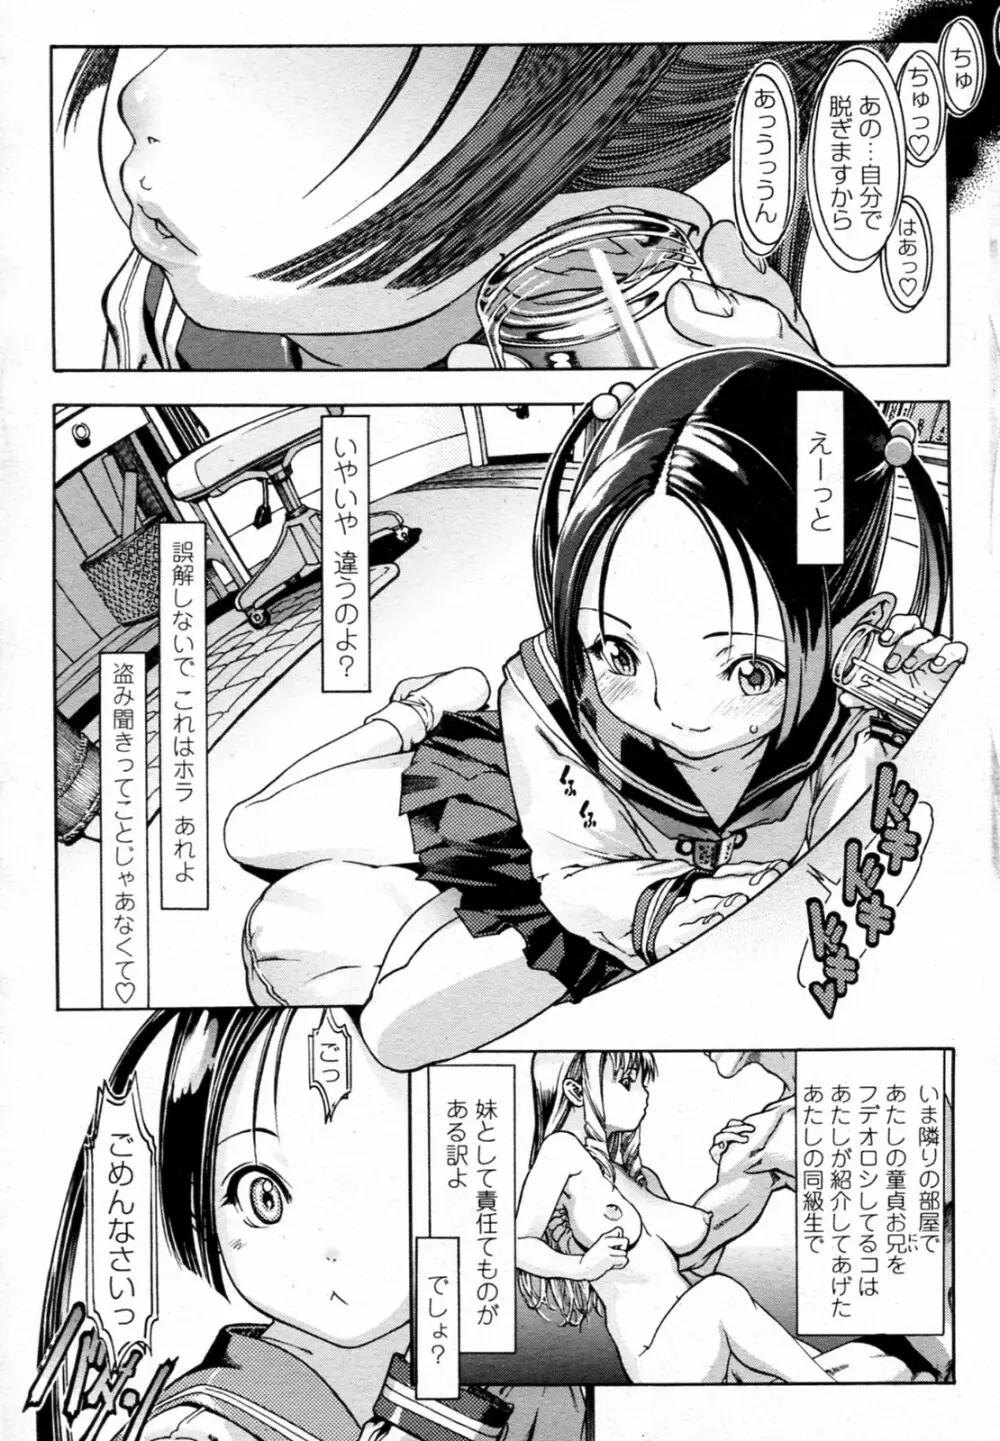 Aniki no Onna 01-02 1ページ